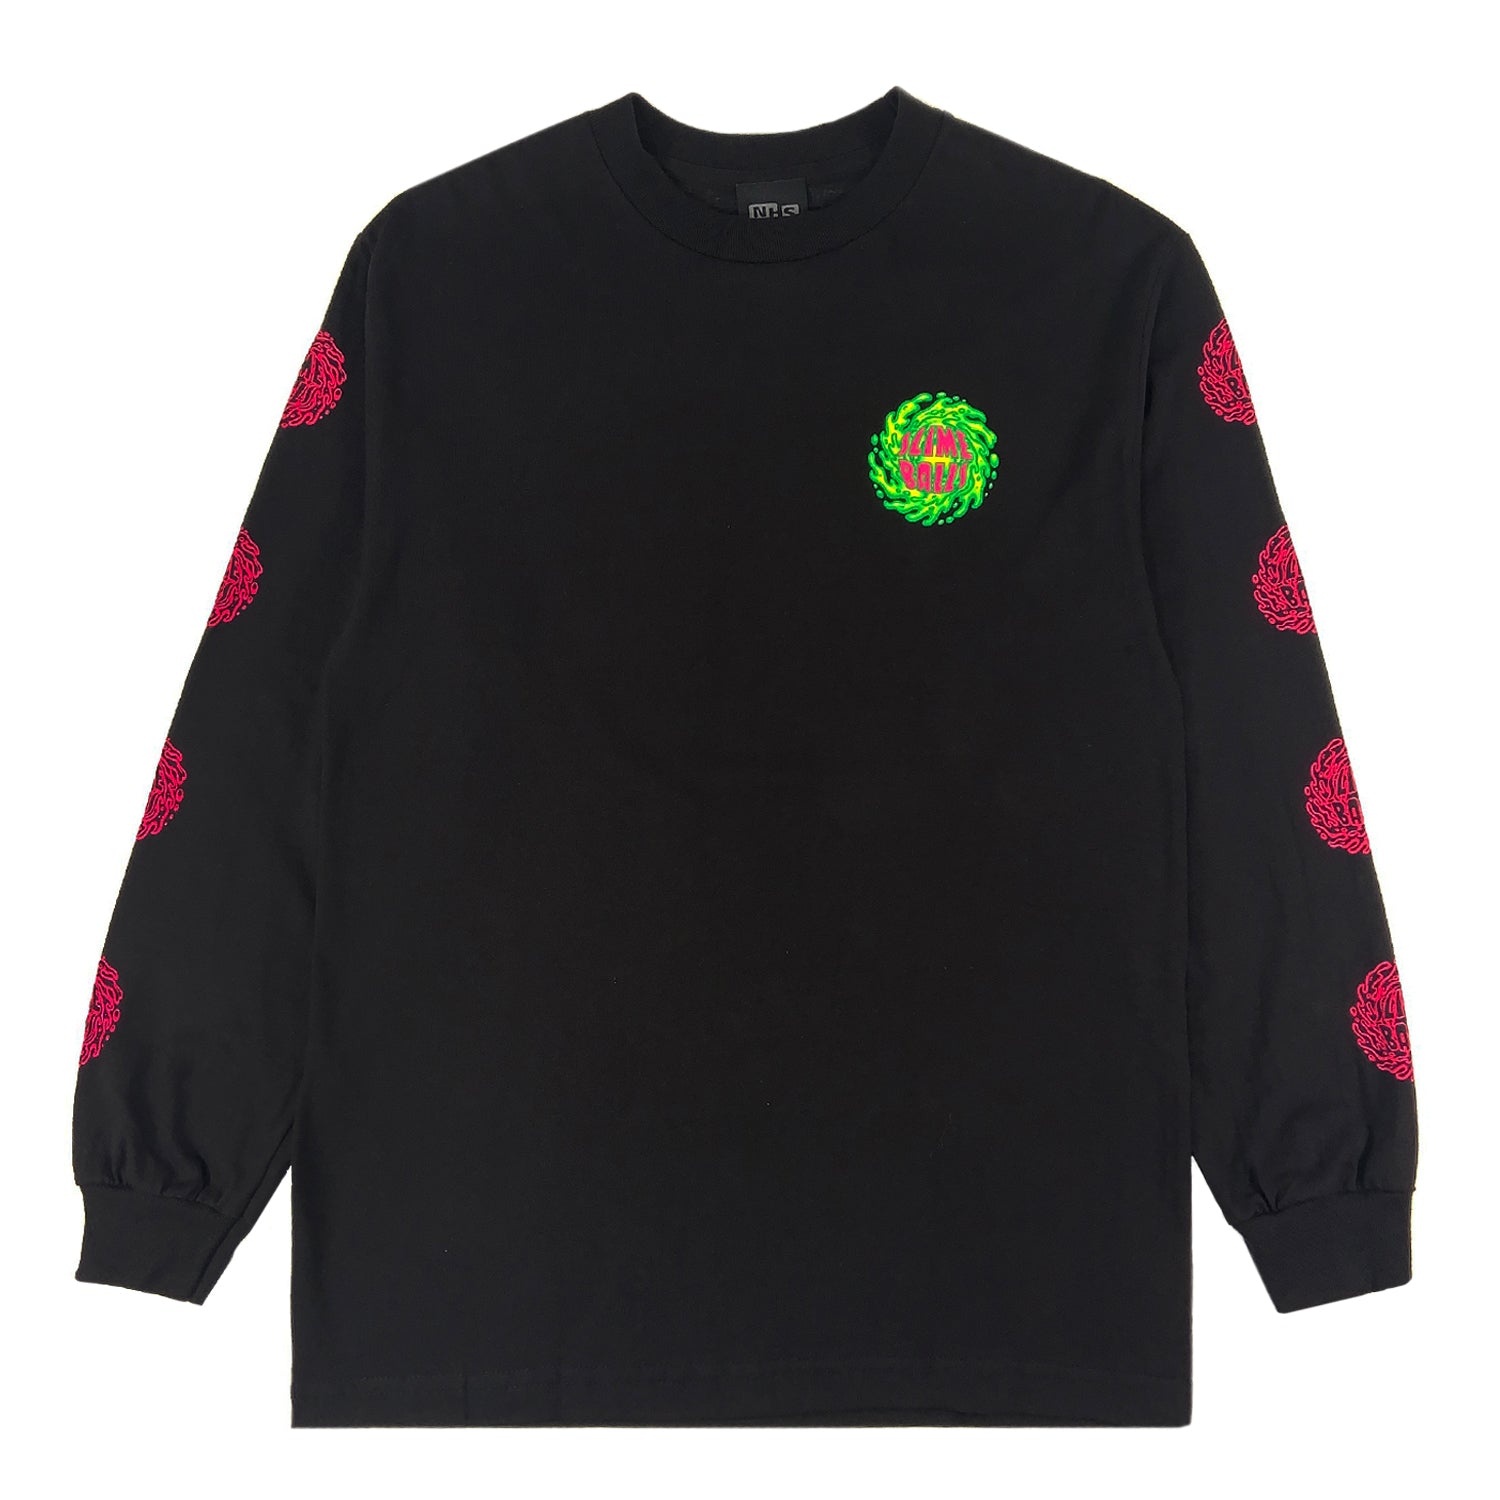 Slime Balls Logo Long Sleeve T Shirt - Black - Prime Delux Store